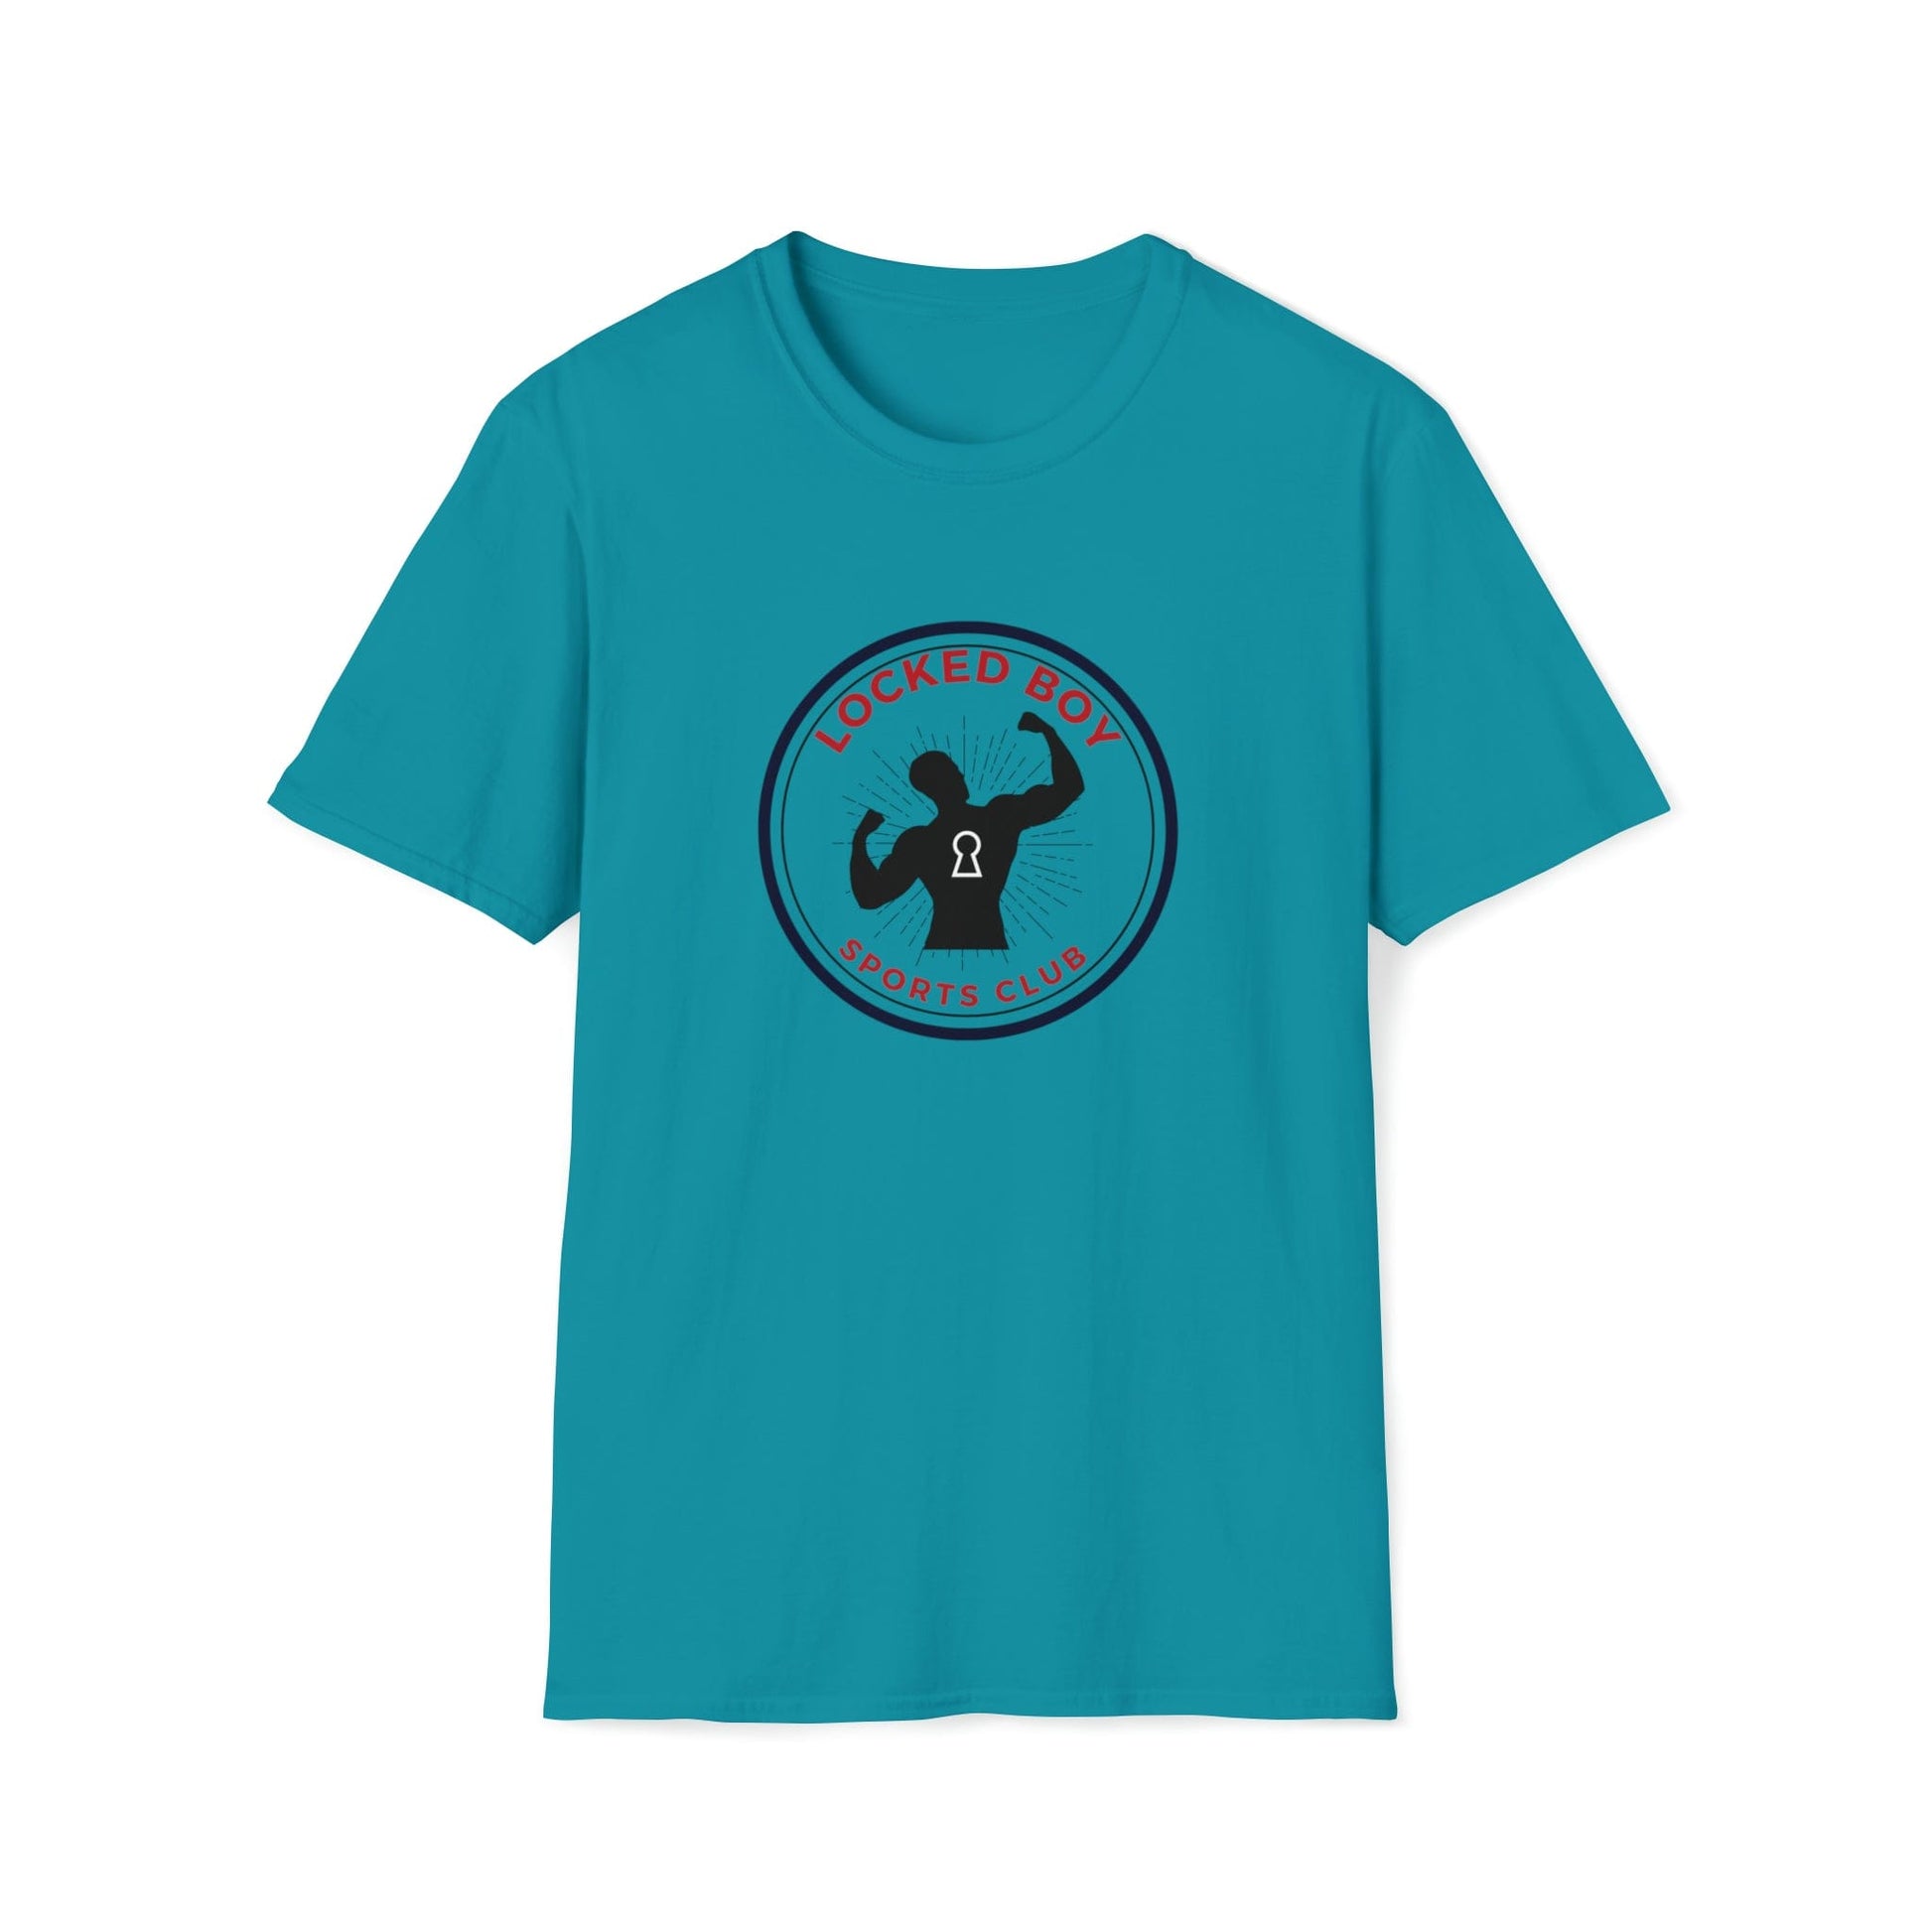 T-Shirt Tropical Blue / S LockedBoy Sports Club - Chastity Tshirt LEATHERDADDY BATOR